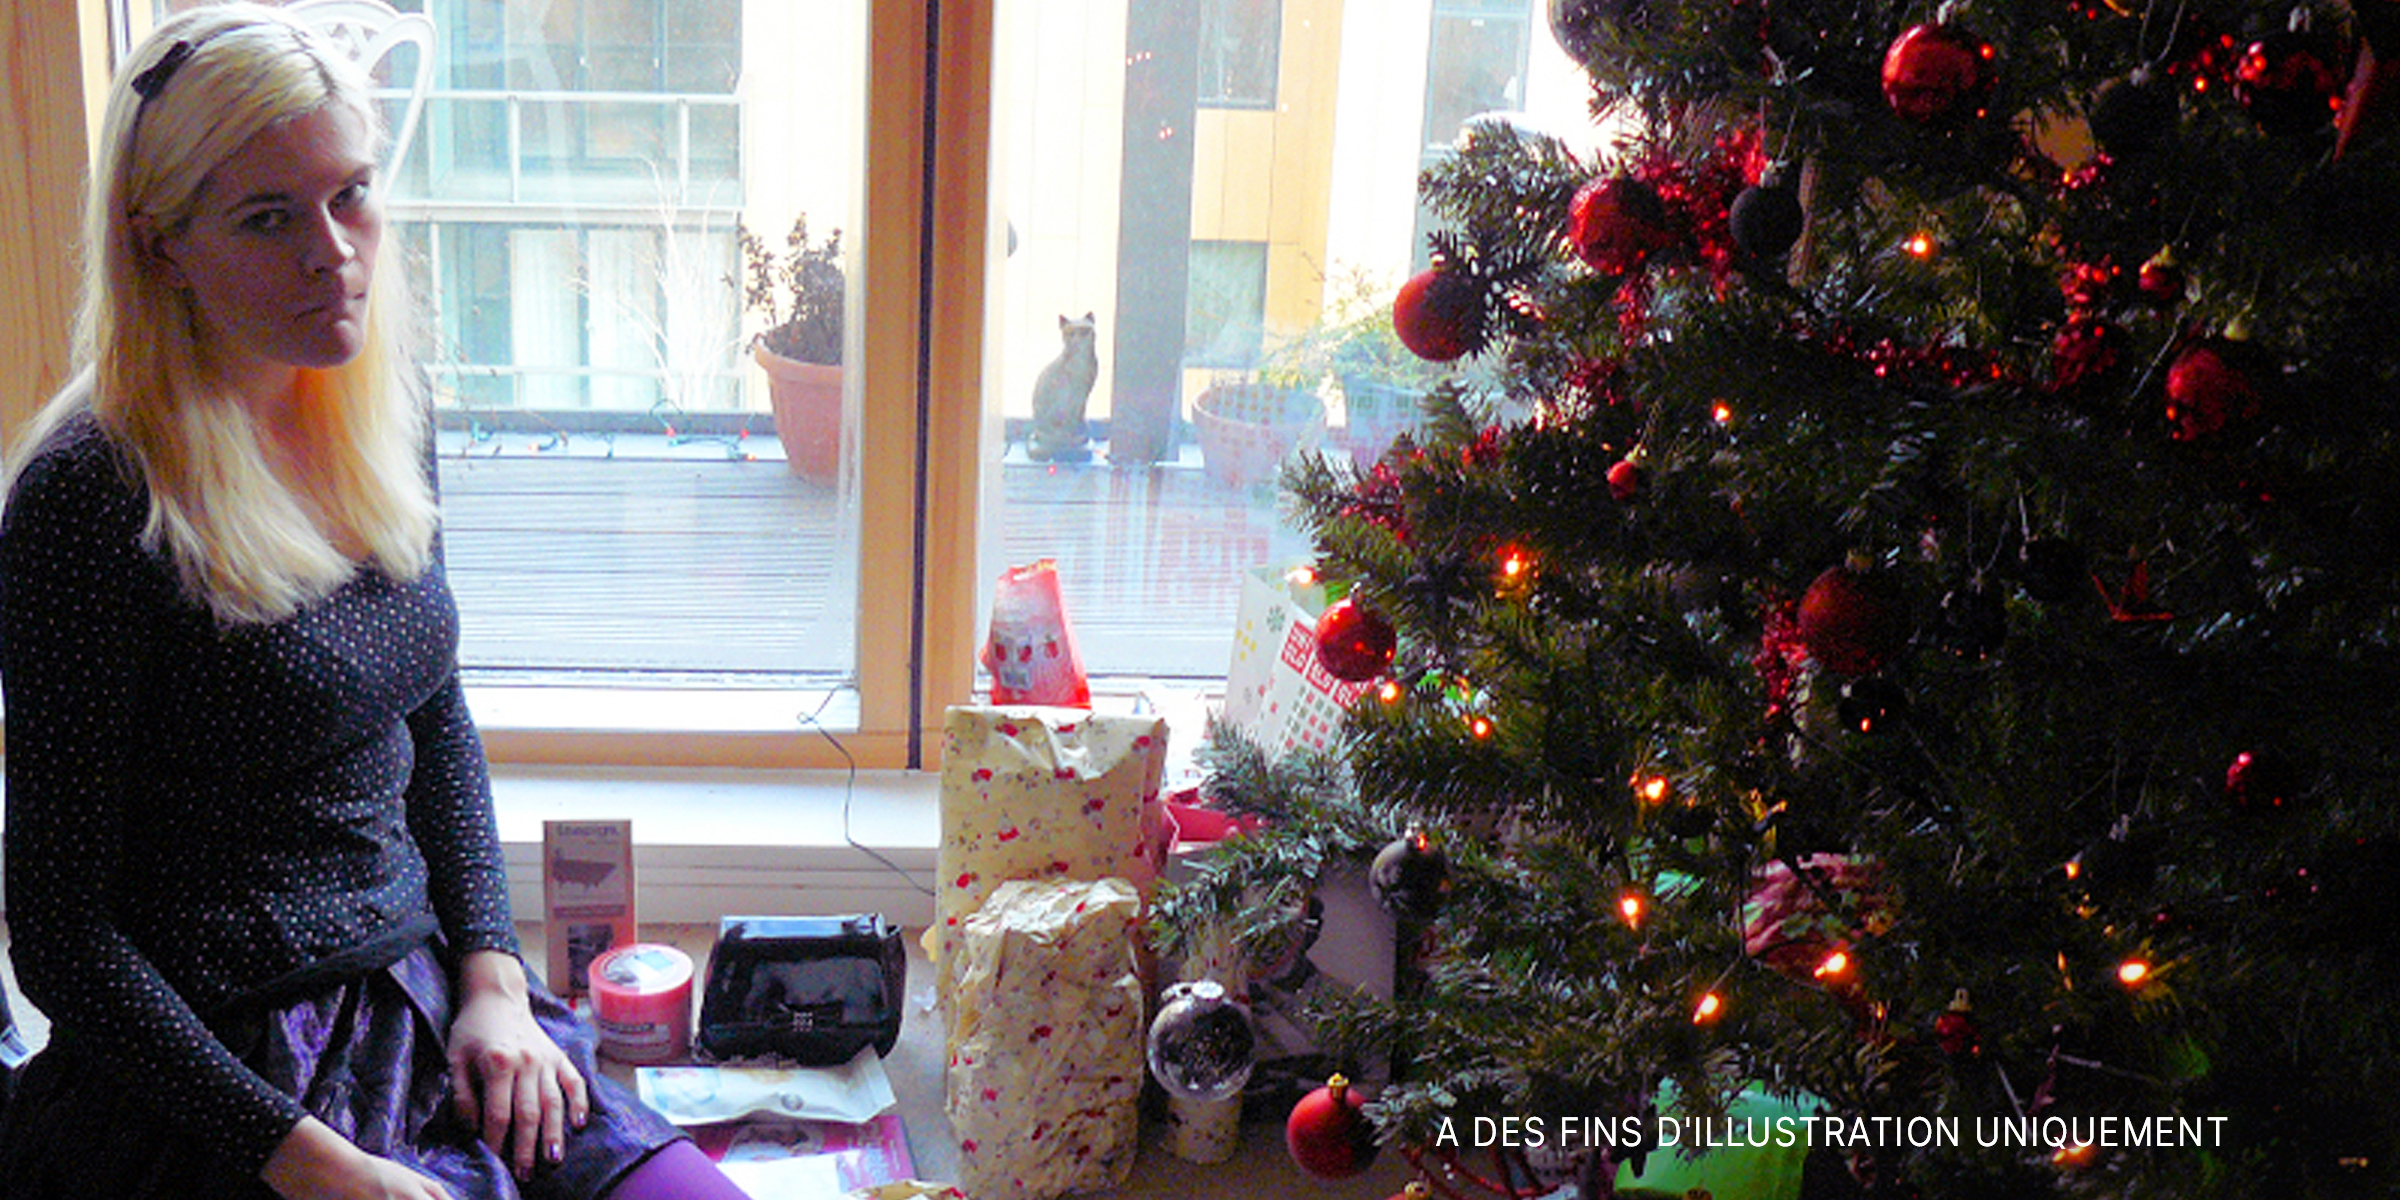 Une femme triste assise à côté d'un arbre de Noël | Source : Flickr.com/Mike_fleming/CC BY 2.0